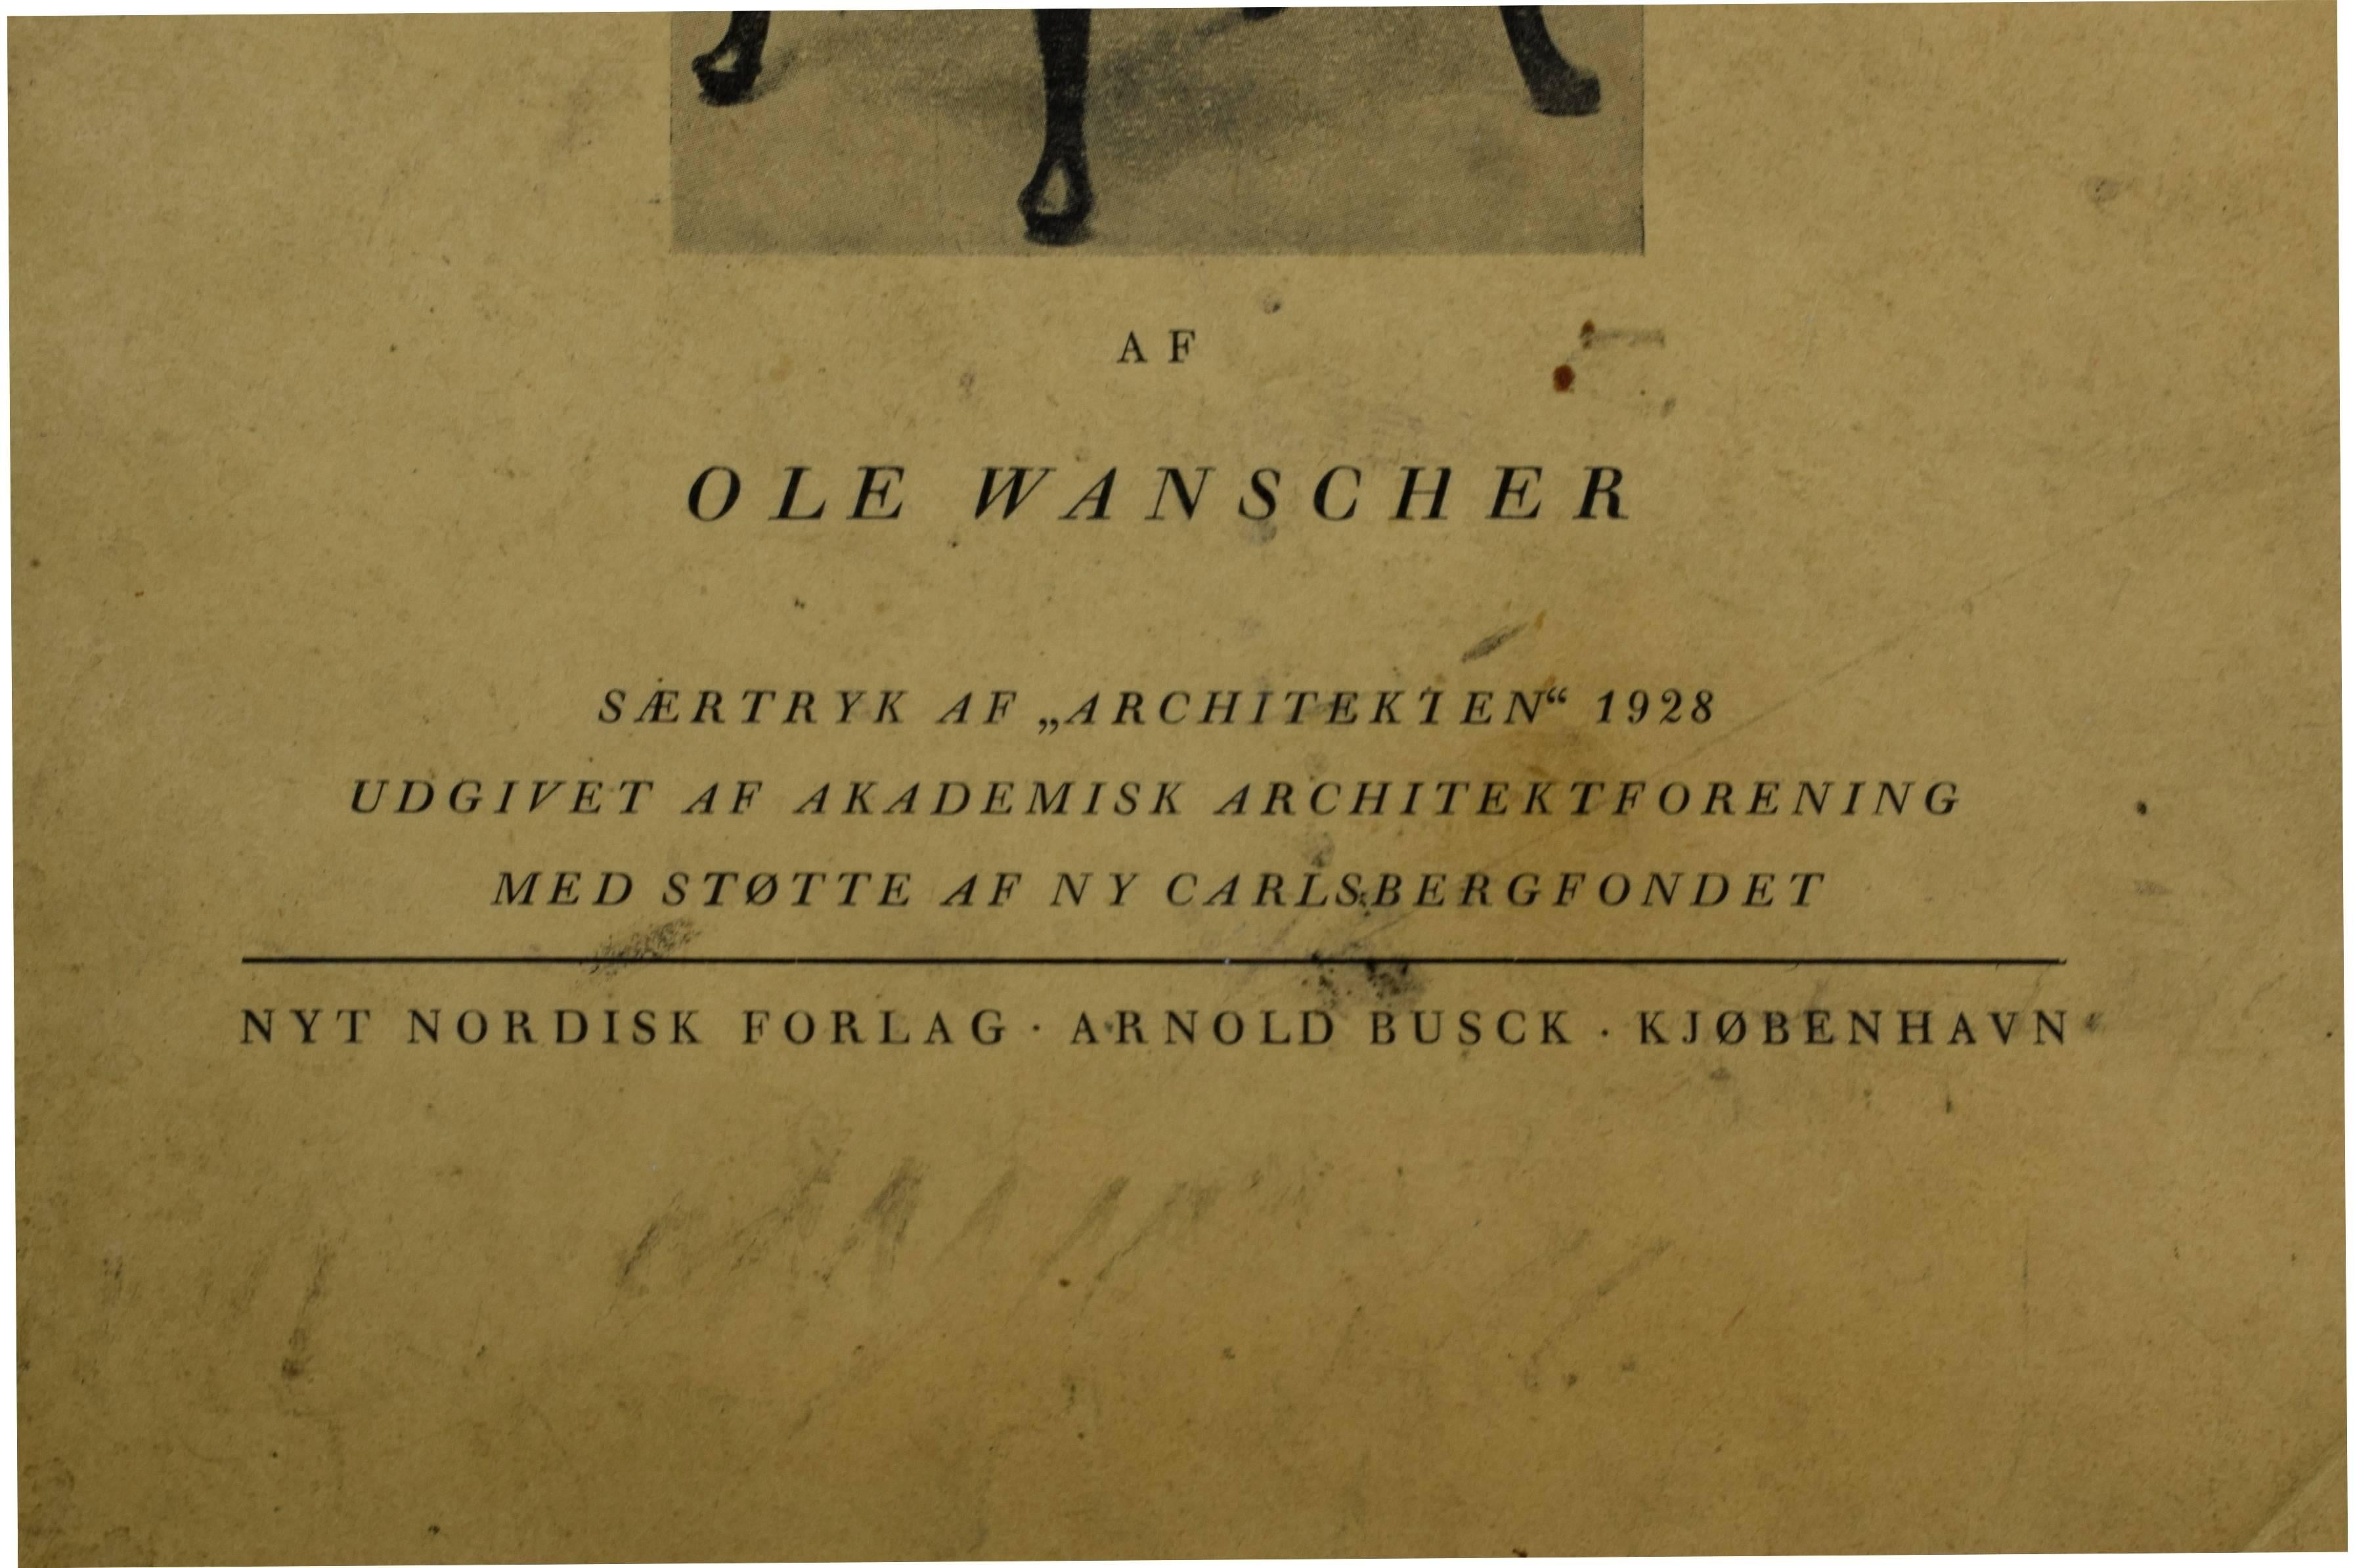 An early publication by Ole Wanscher (1903-1985): Møbelkunsten i udvalgte eksemplarer fra mange lande (